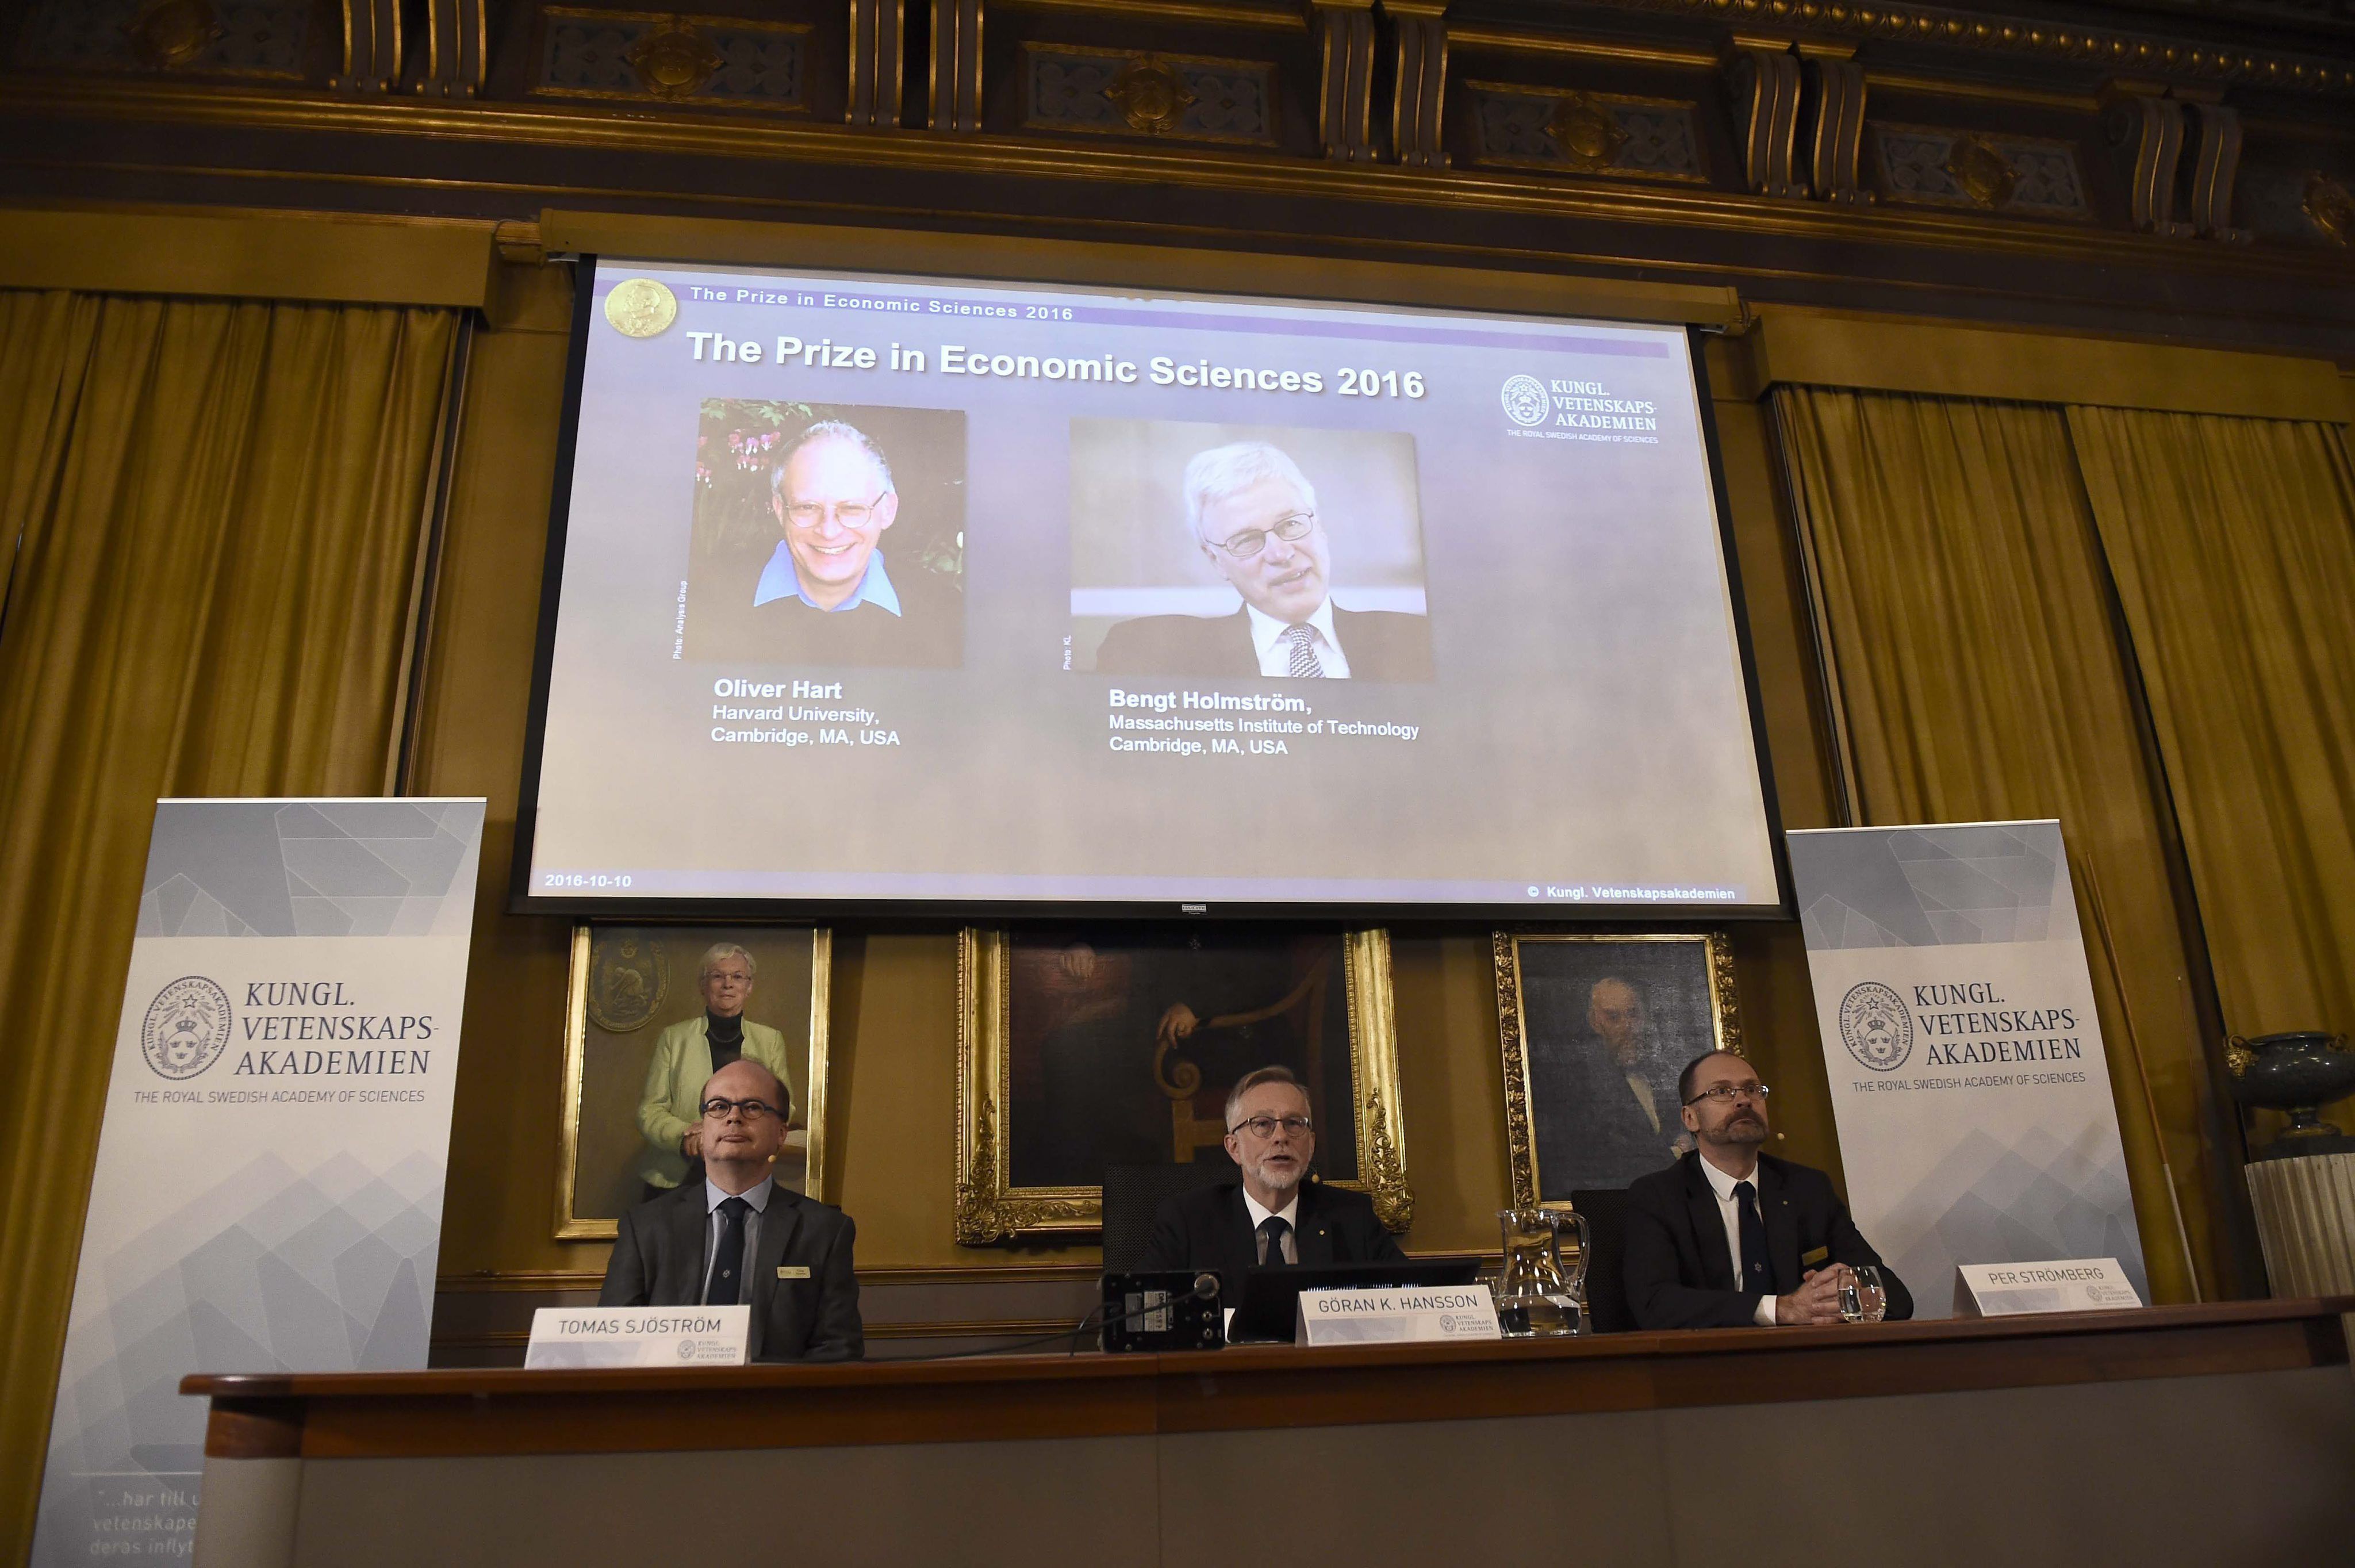 Oliver Hart i Bengt Holmström, premios Nobel de Economía 2016